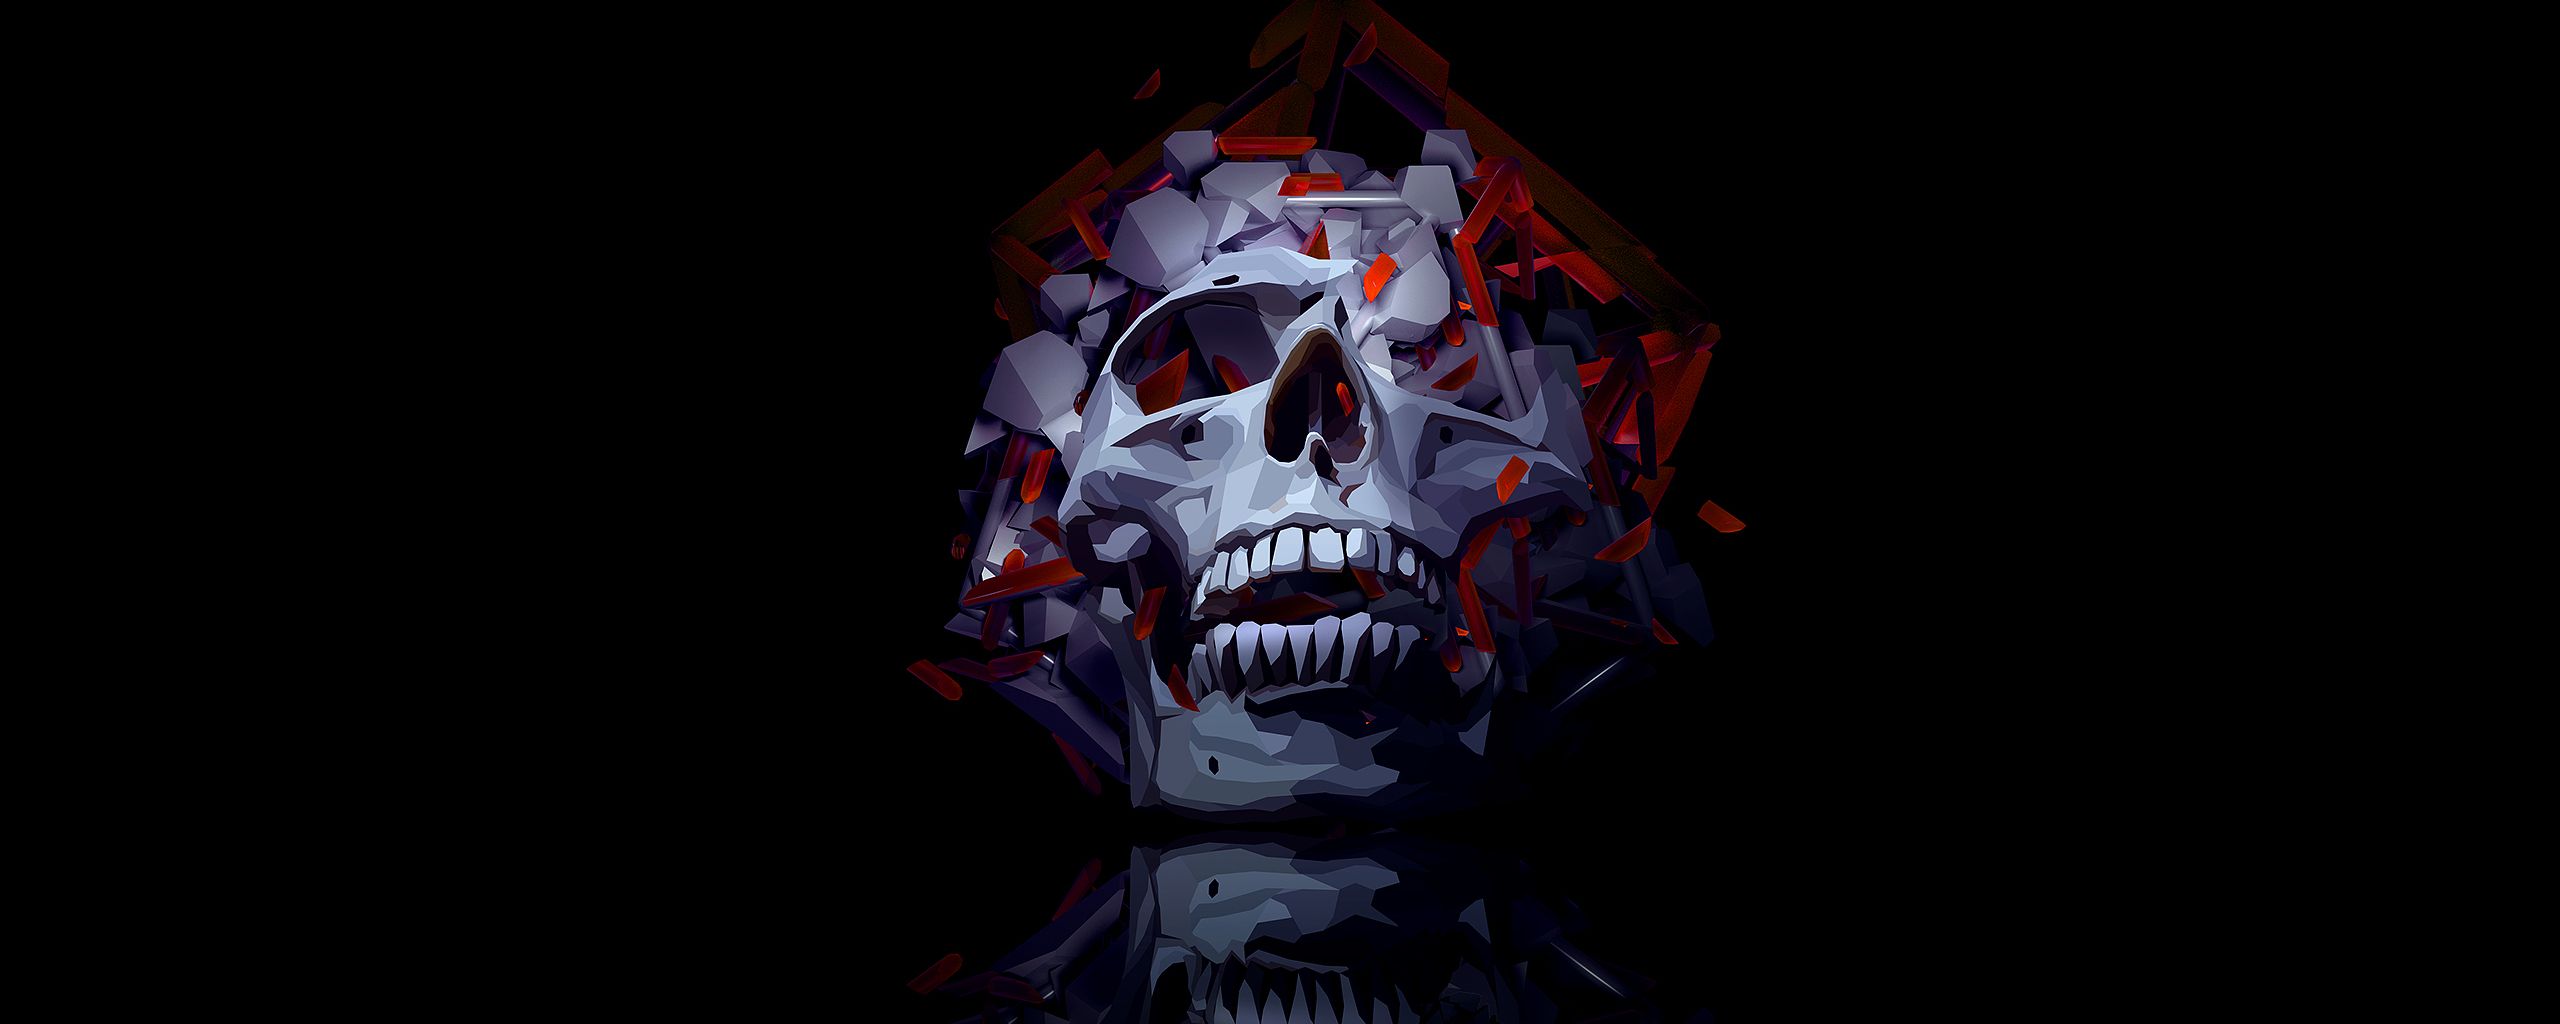 Smoky Skull 2560x1024 Resolution Wallpaper, HD Artist 4K